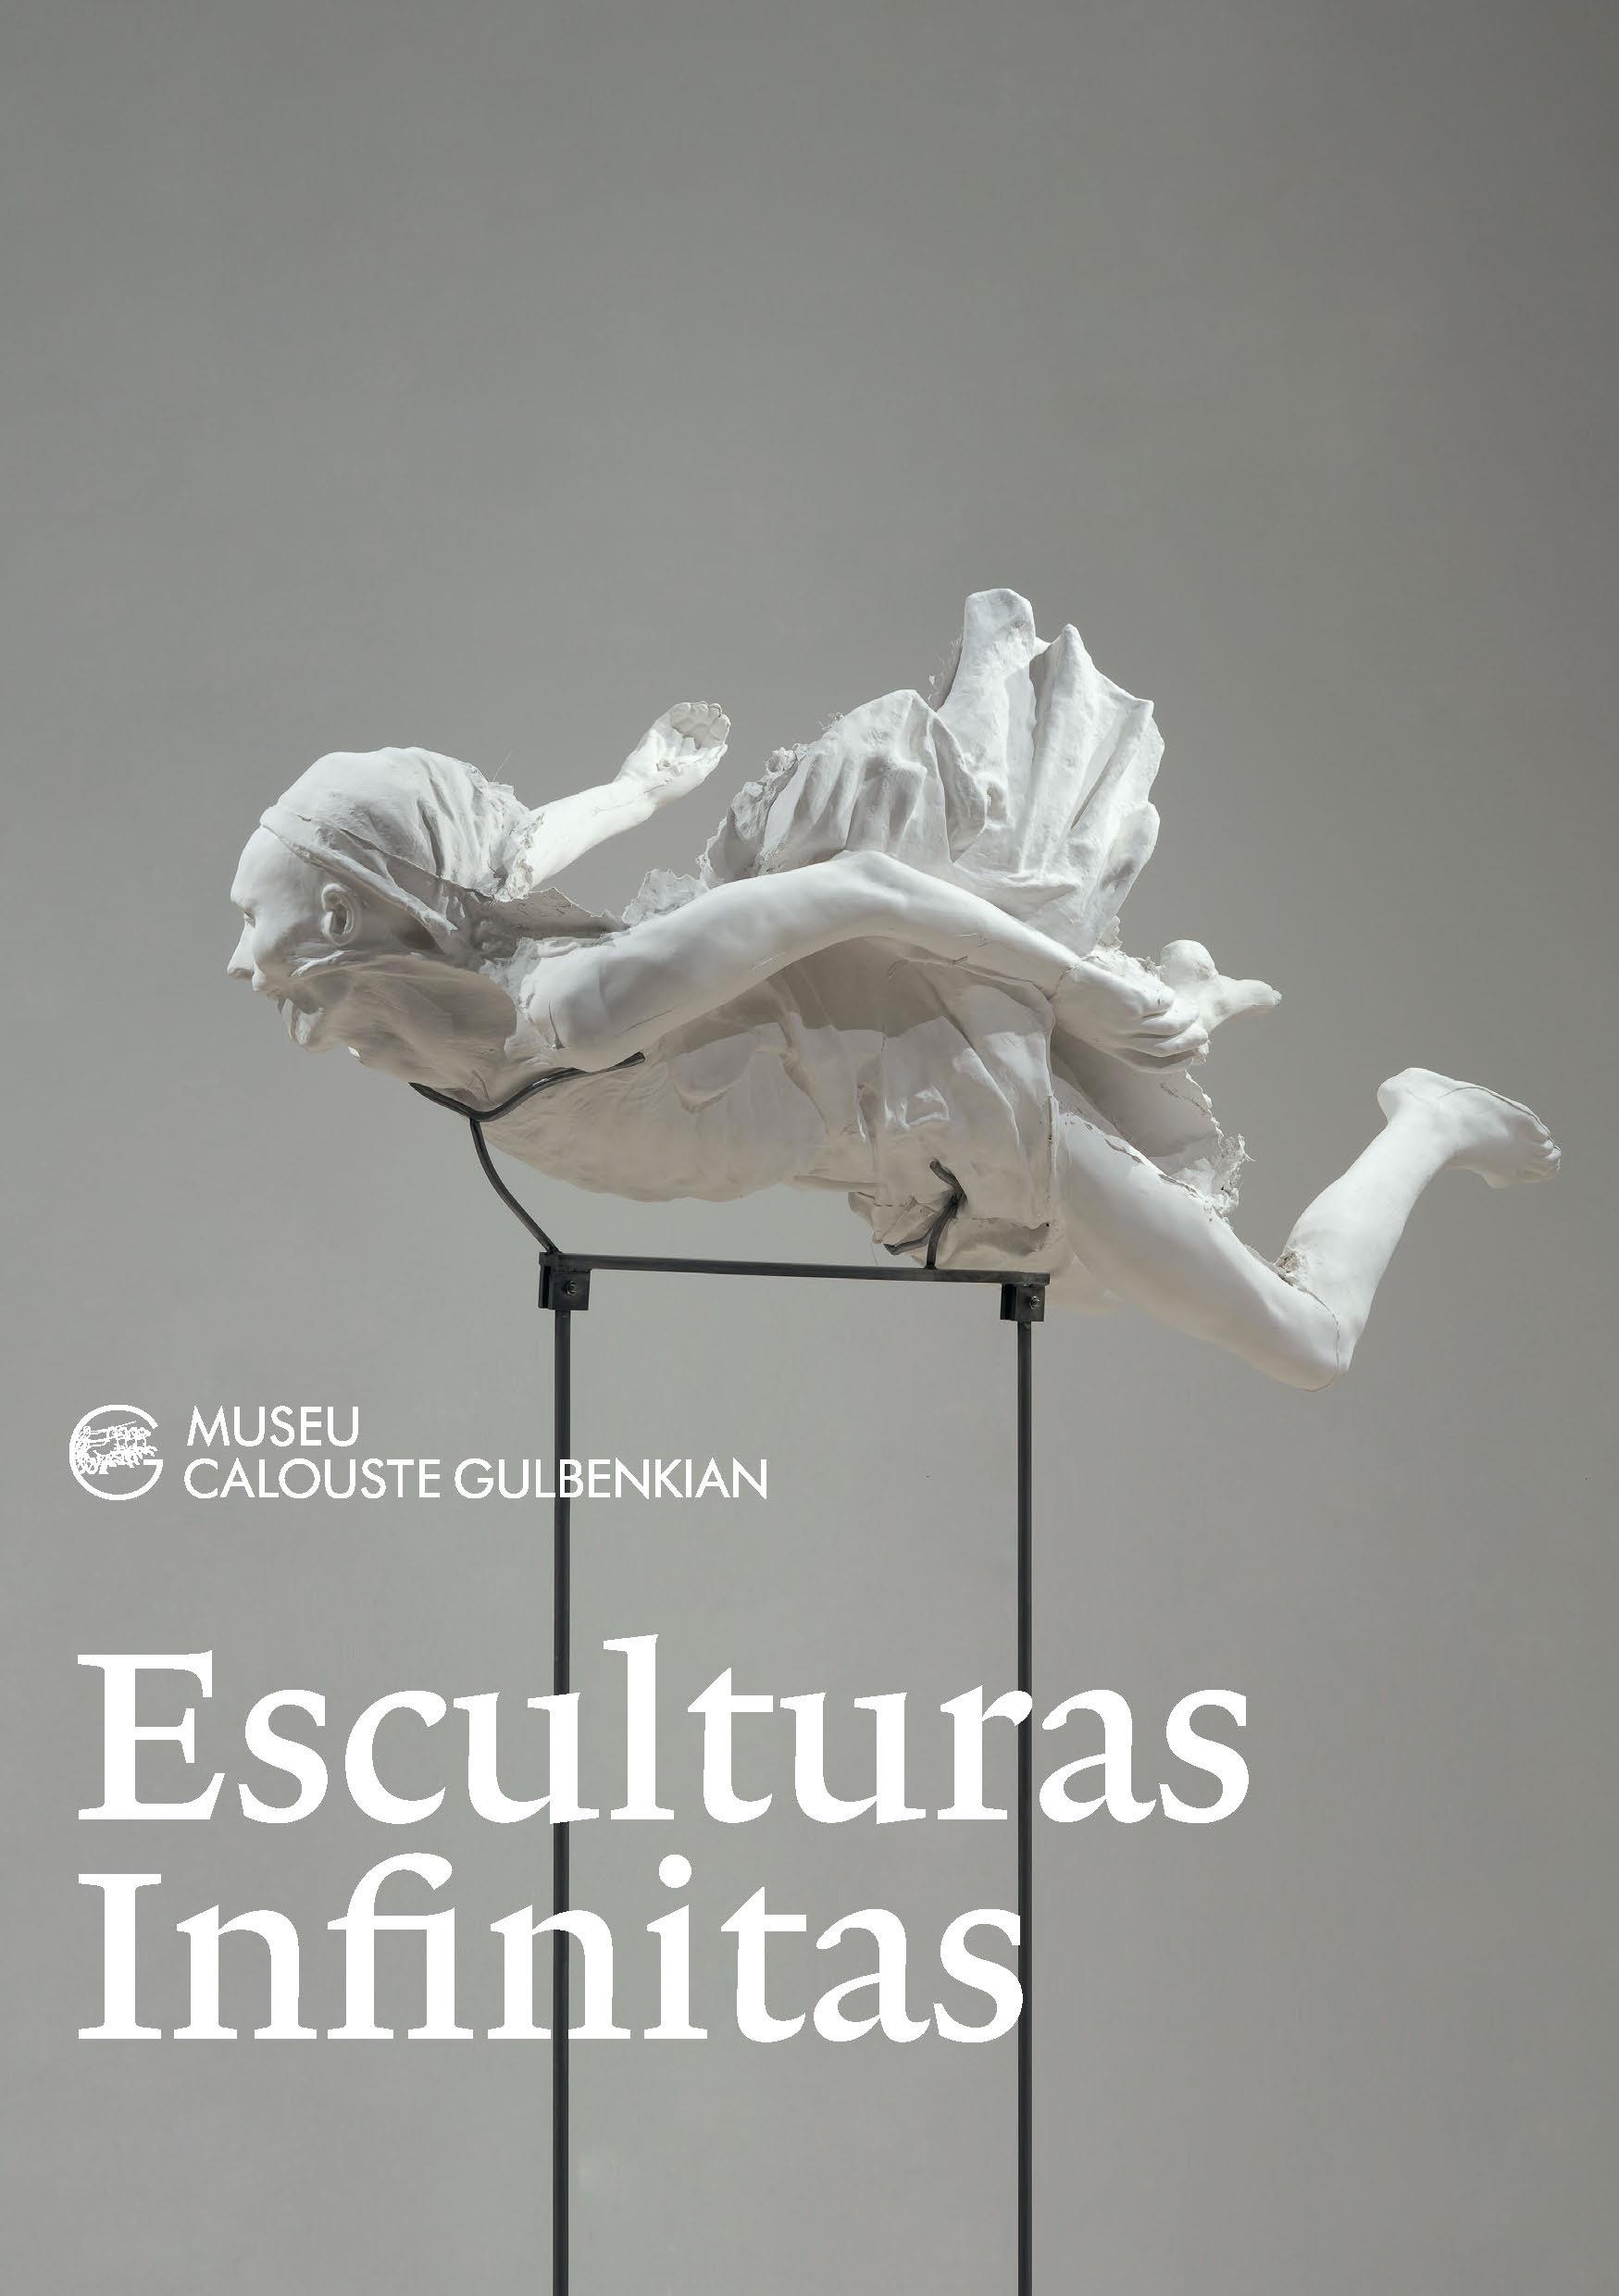 Esculturas_Infinitas_convite_PT_1.1